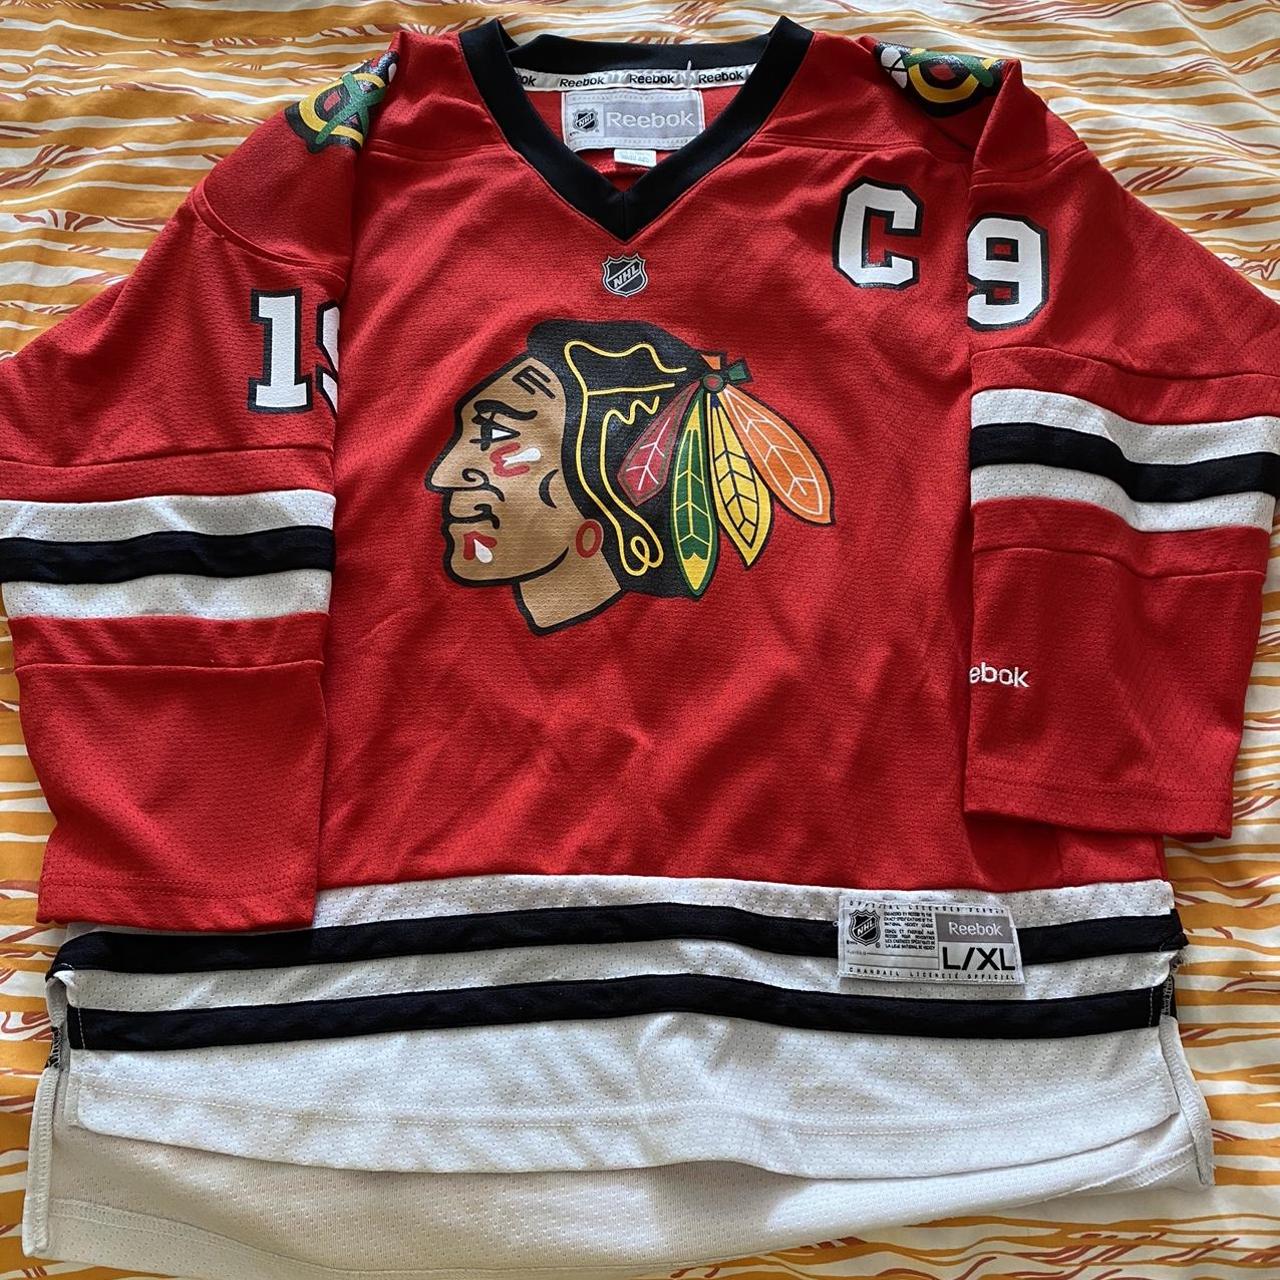 Chicago Blackhawks NHL hockey jersey by Reebok